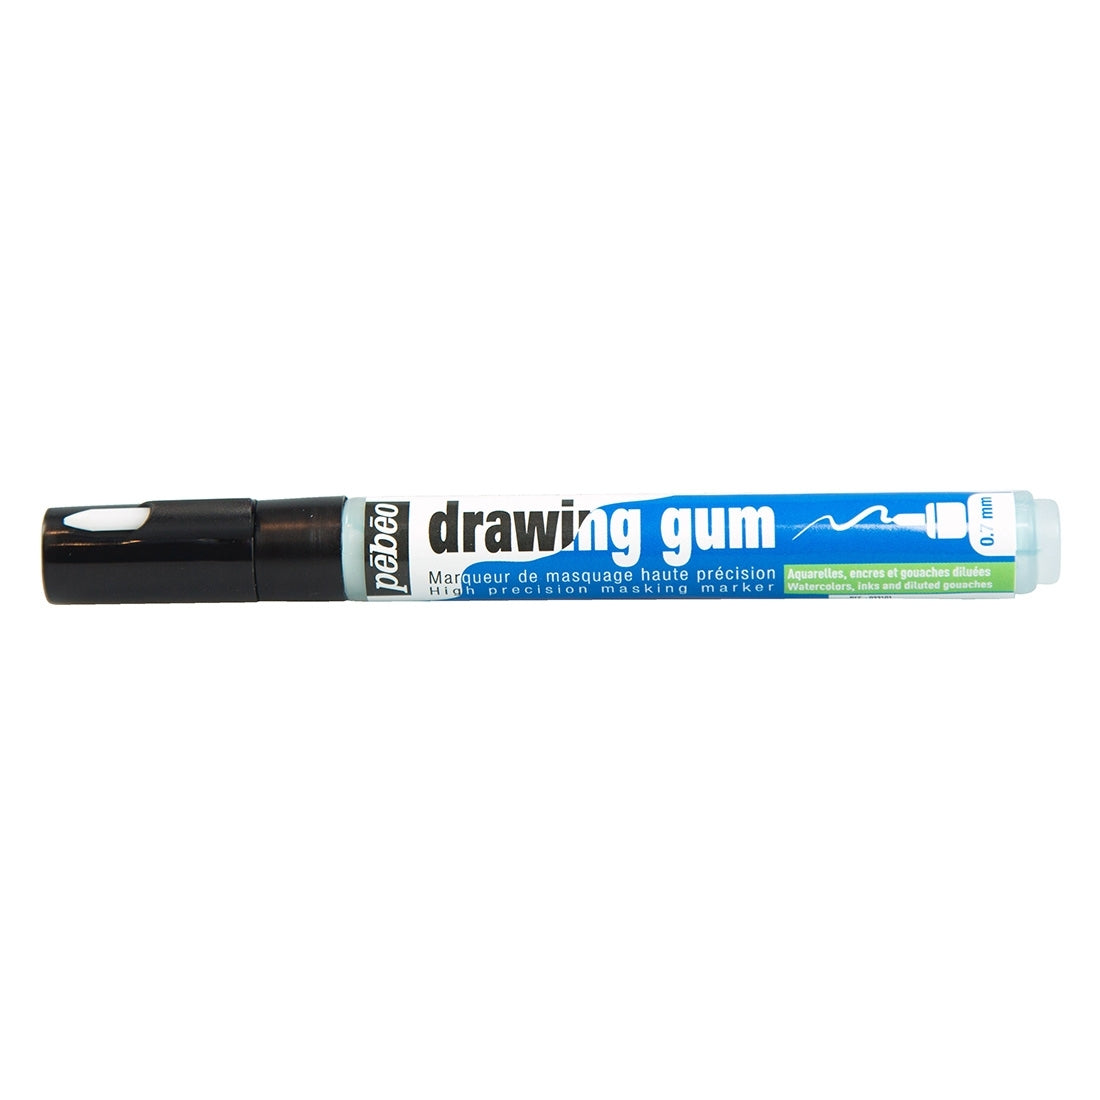 Pebeo - Drawing Gum Marker Nib 0.7mm